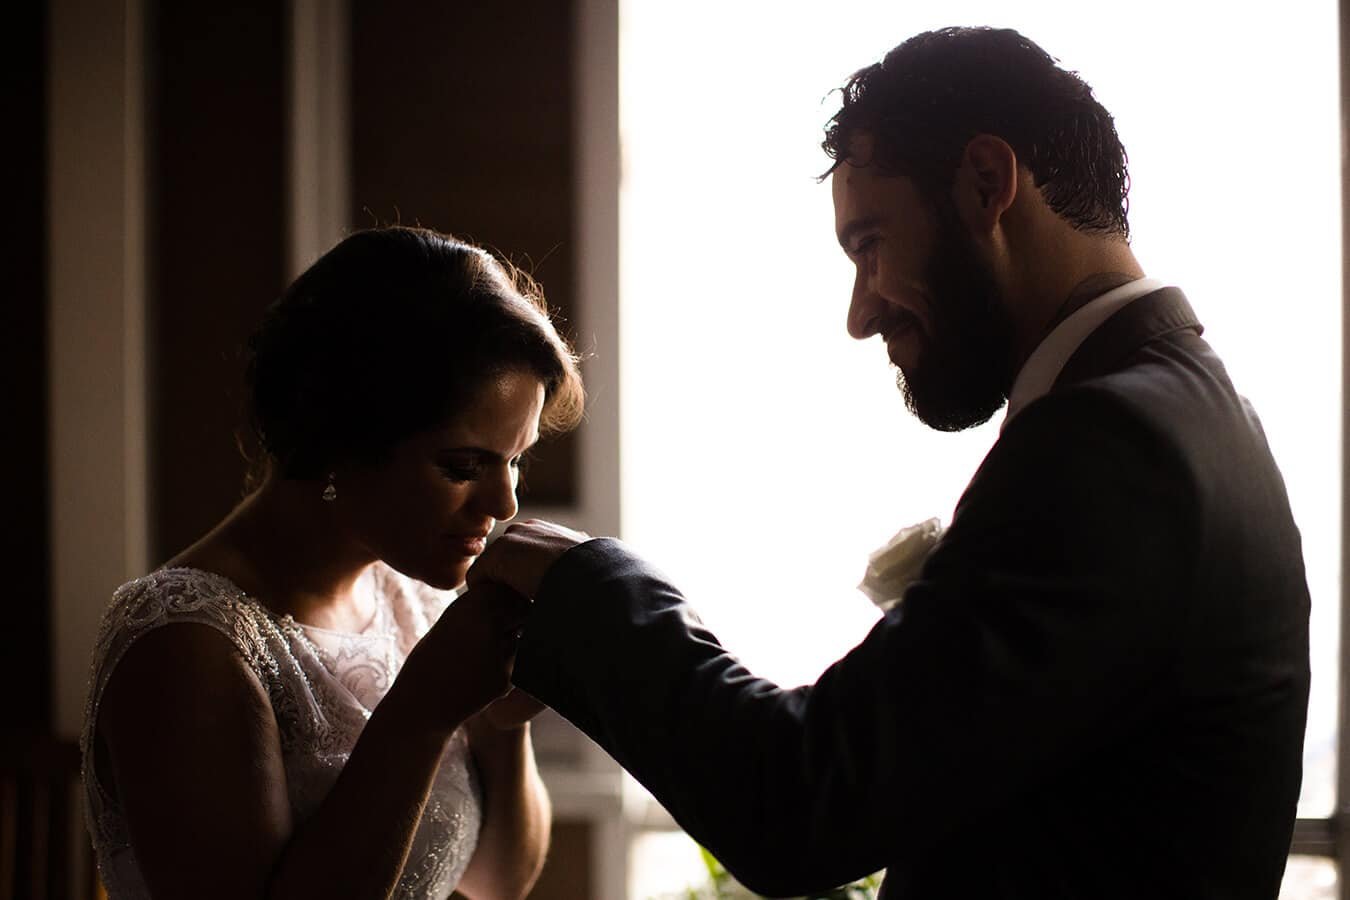 Melhores fotógrafos de casamentos em Florianópolis | os melhores fotografos de casamento | melhores fotografos de casamento | melhores fotografos | melhor fotografo de casamento